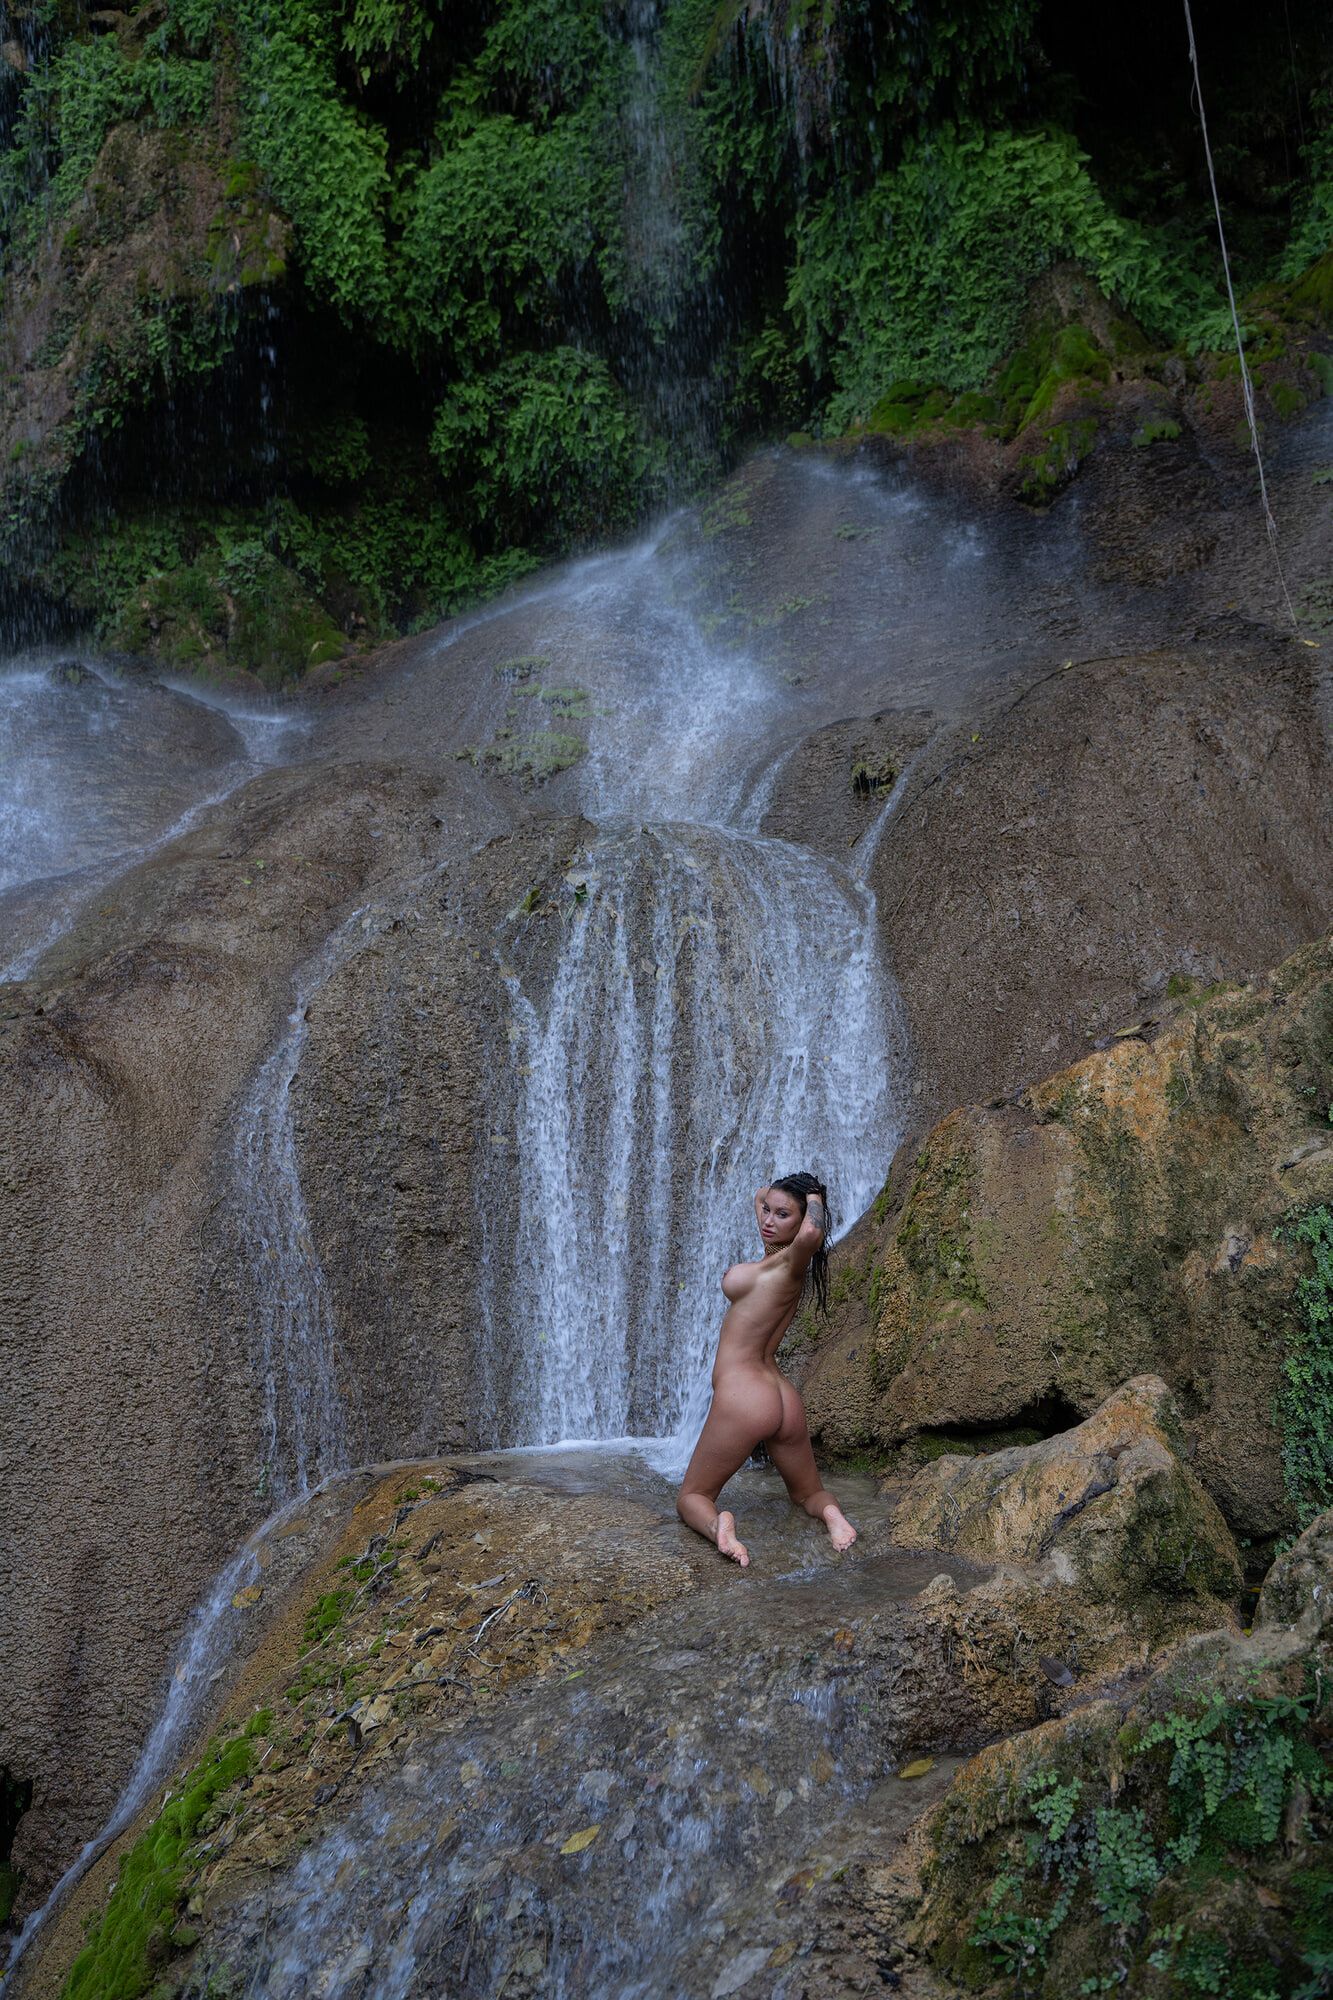 Wet Monika Fox In A Net Near A Waterfall #4